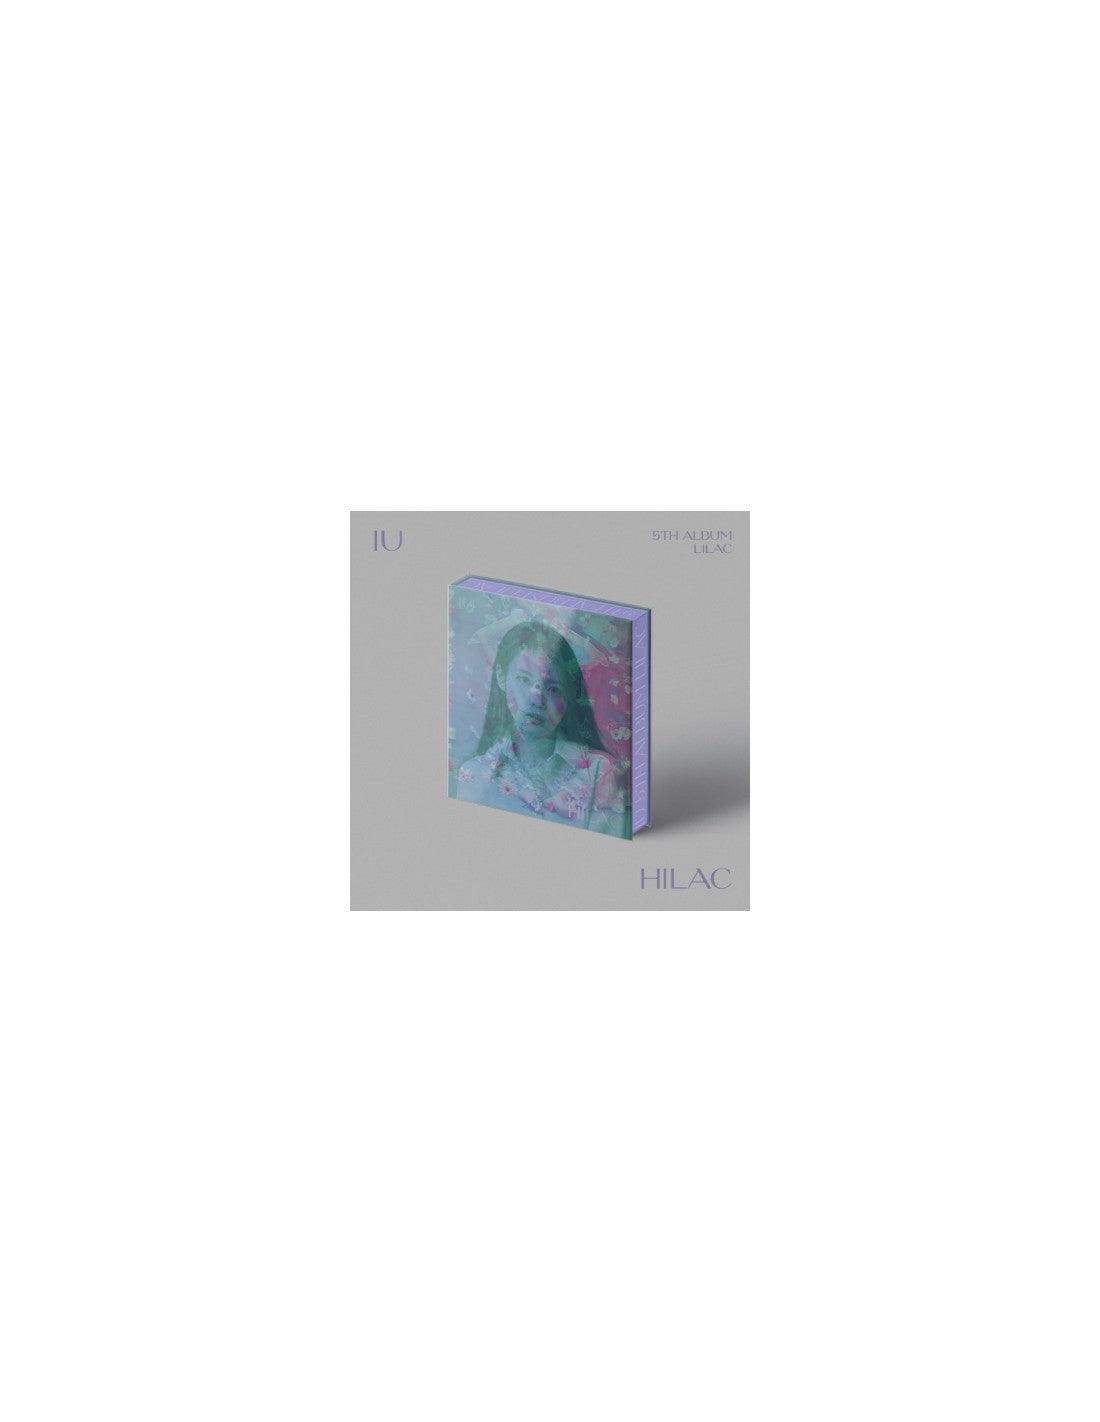 IU- Album Vol.5 [LILAC] - KAEPJJANG SHOP (캡짱 숍)